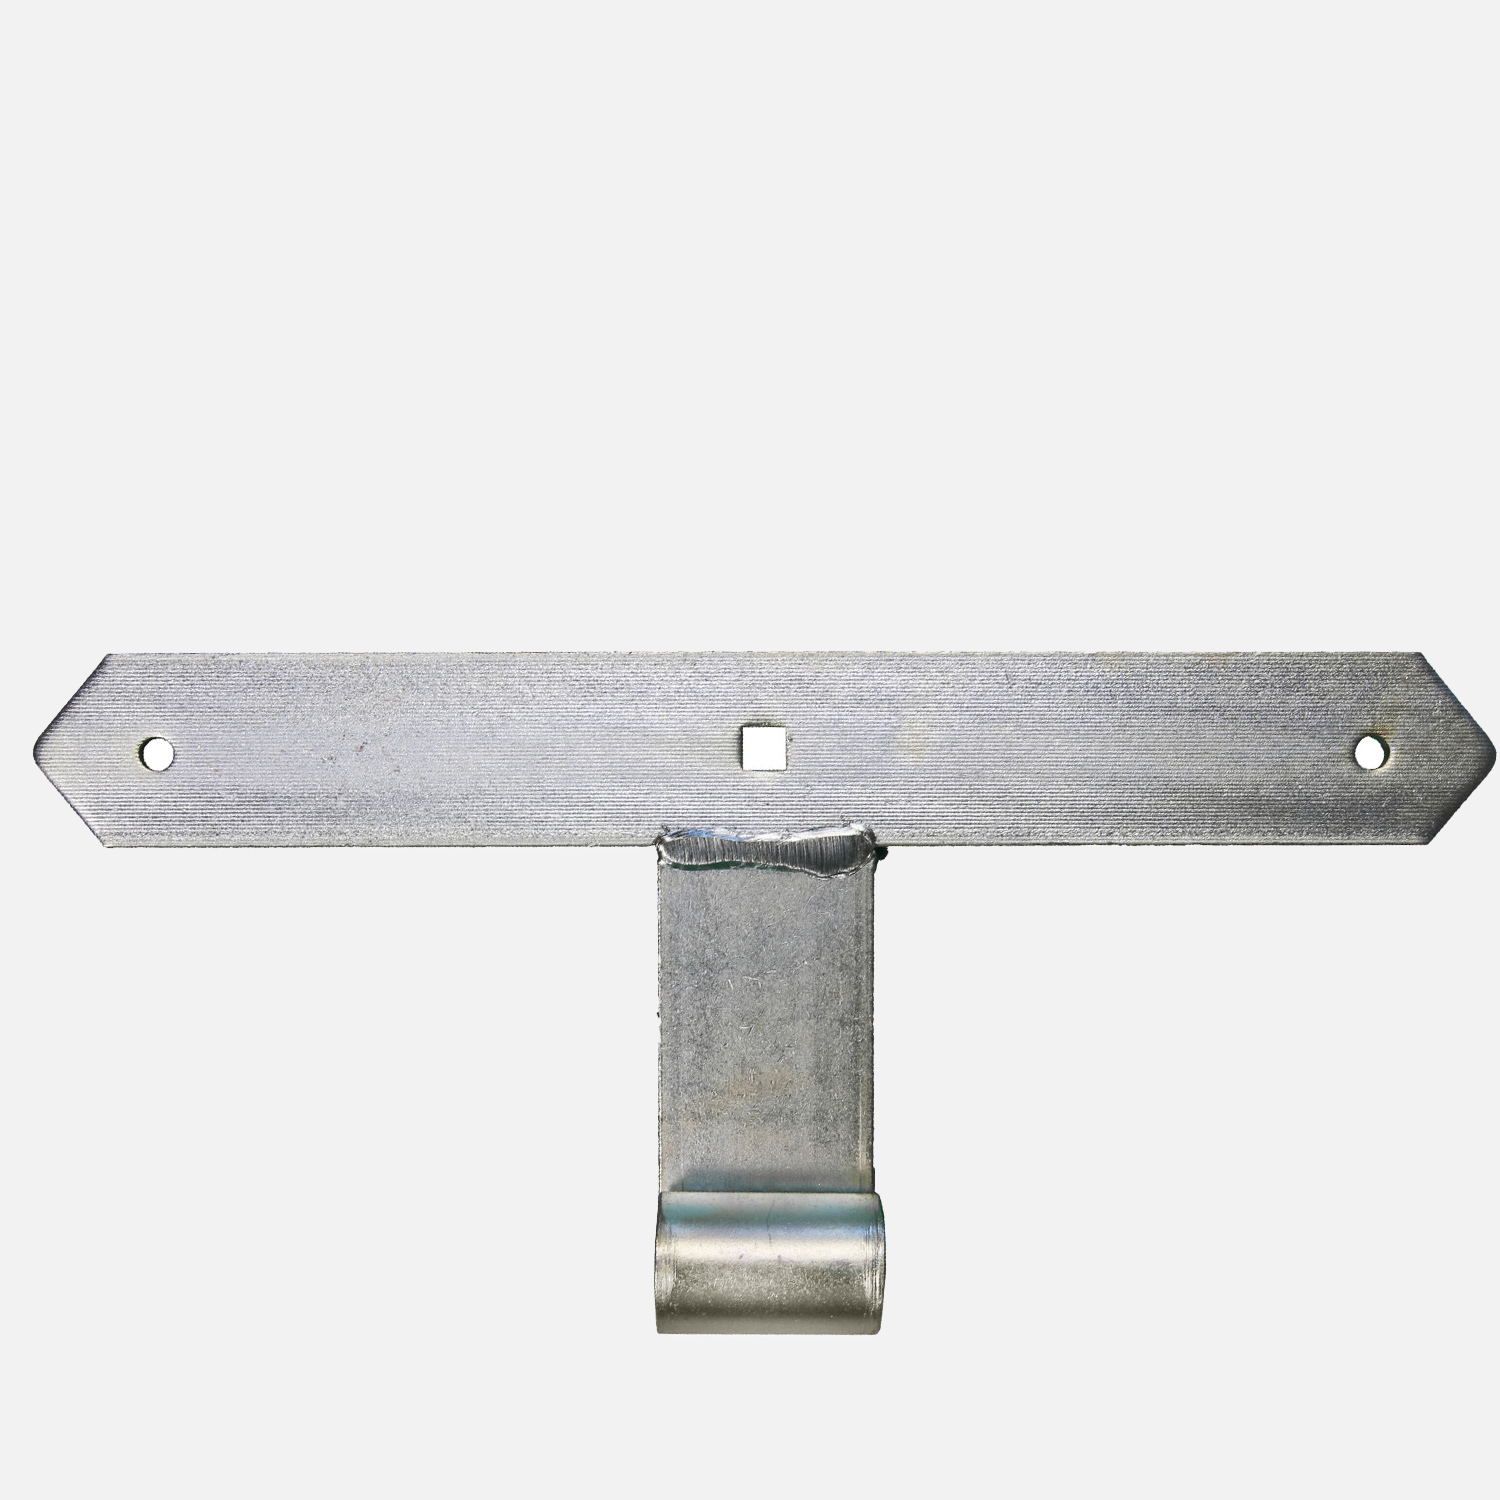 1 Tor-Mittelband, dickschichtpassiviert - Rolle Ø 16 mm, 300x40 mm